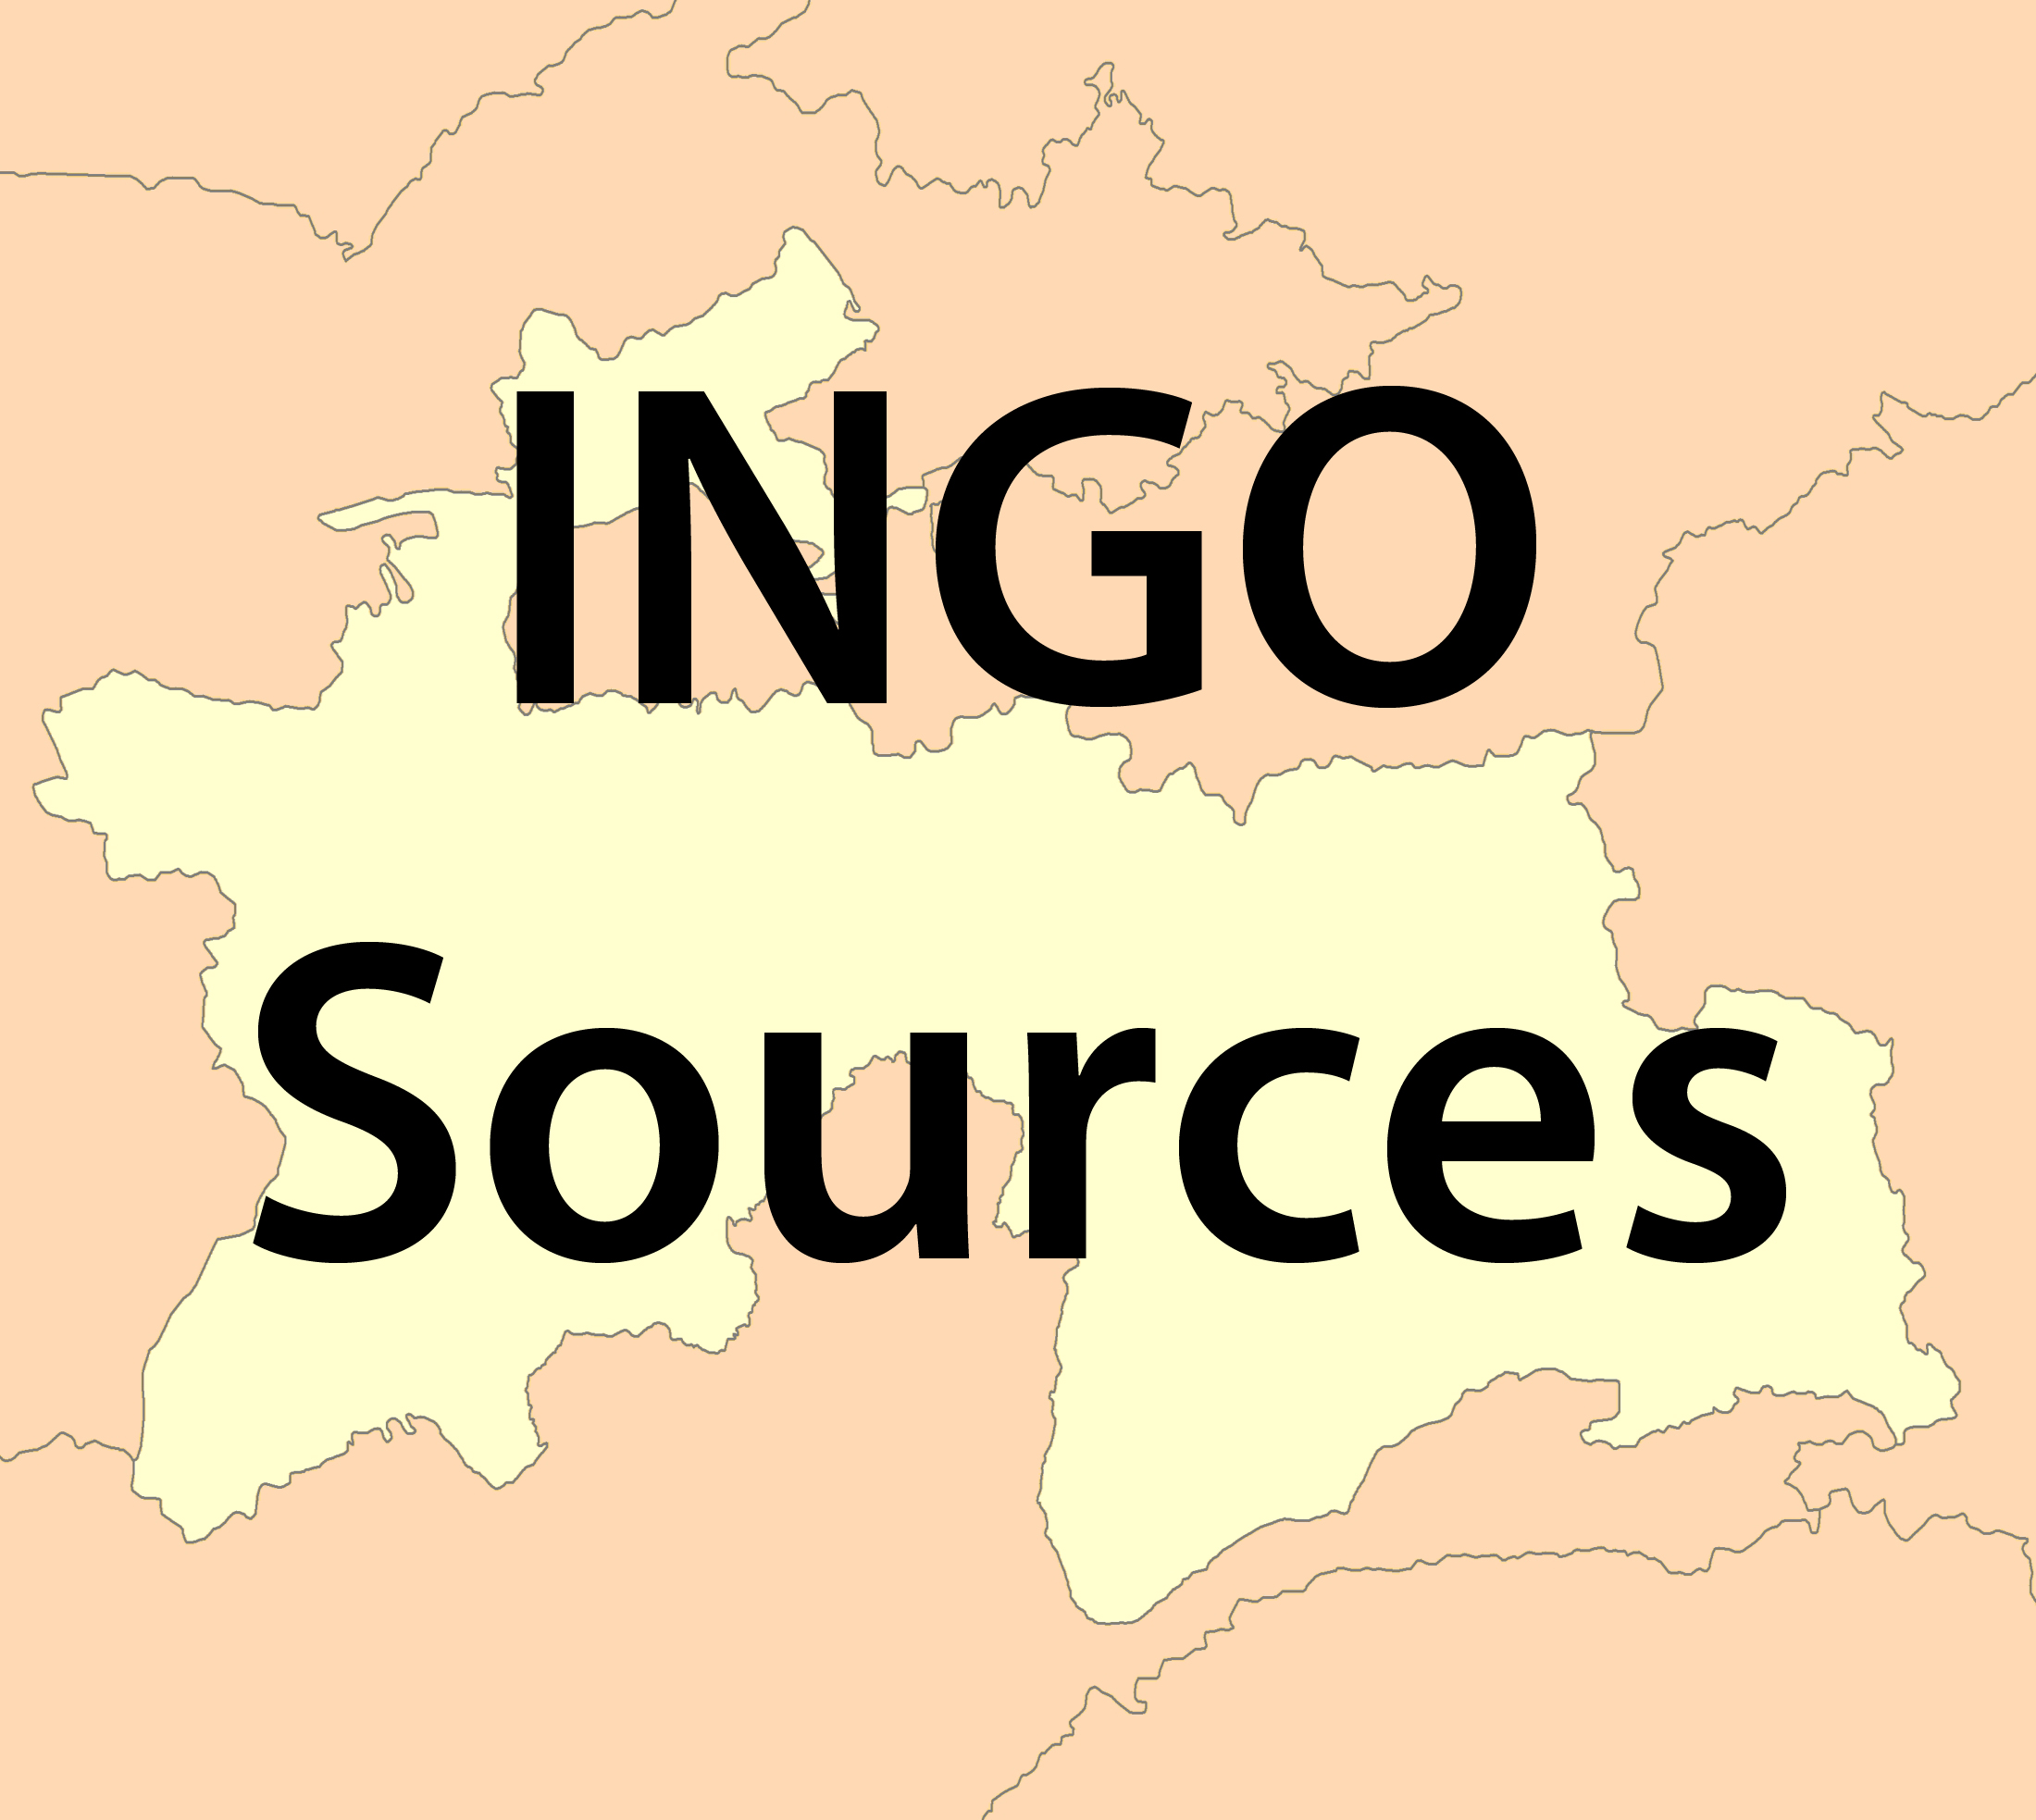 INGO sources